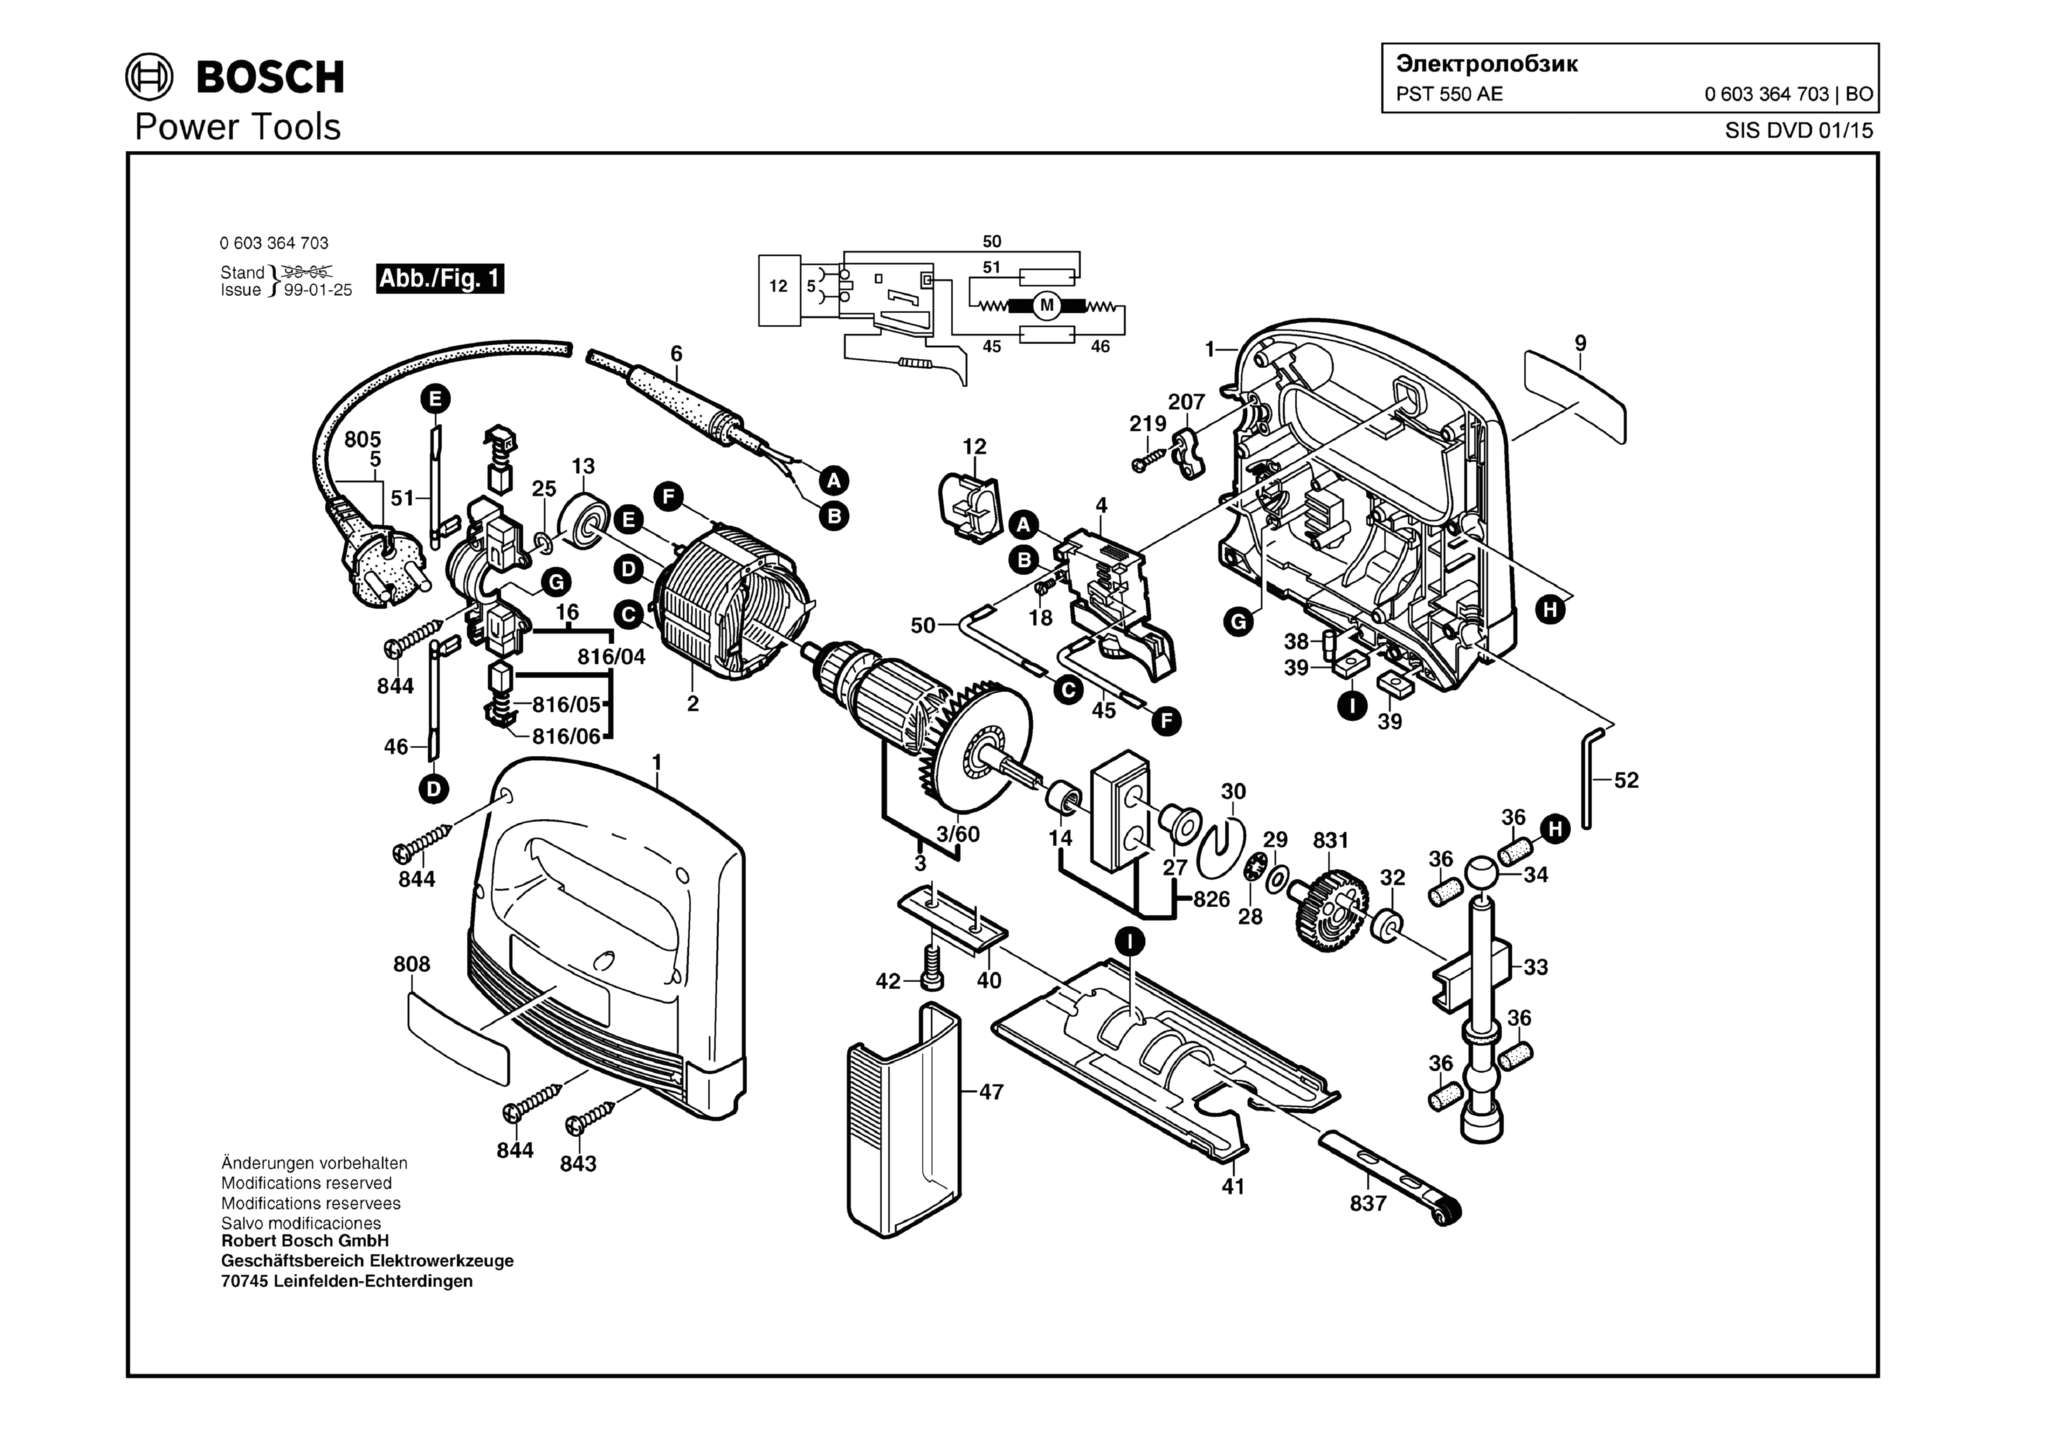 Запчасти, схема и деталировка Bosch PST 550 AE (ТИП 0603364703)